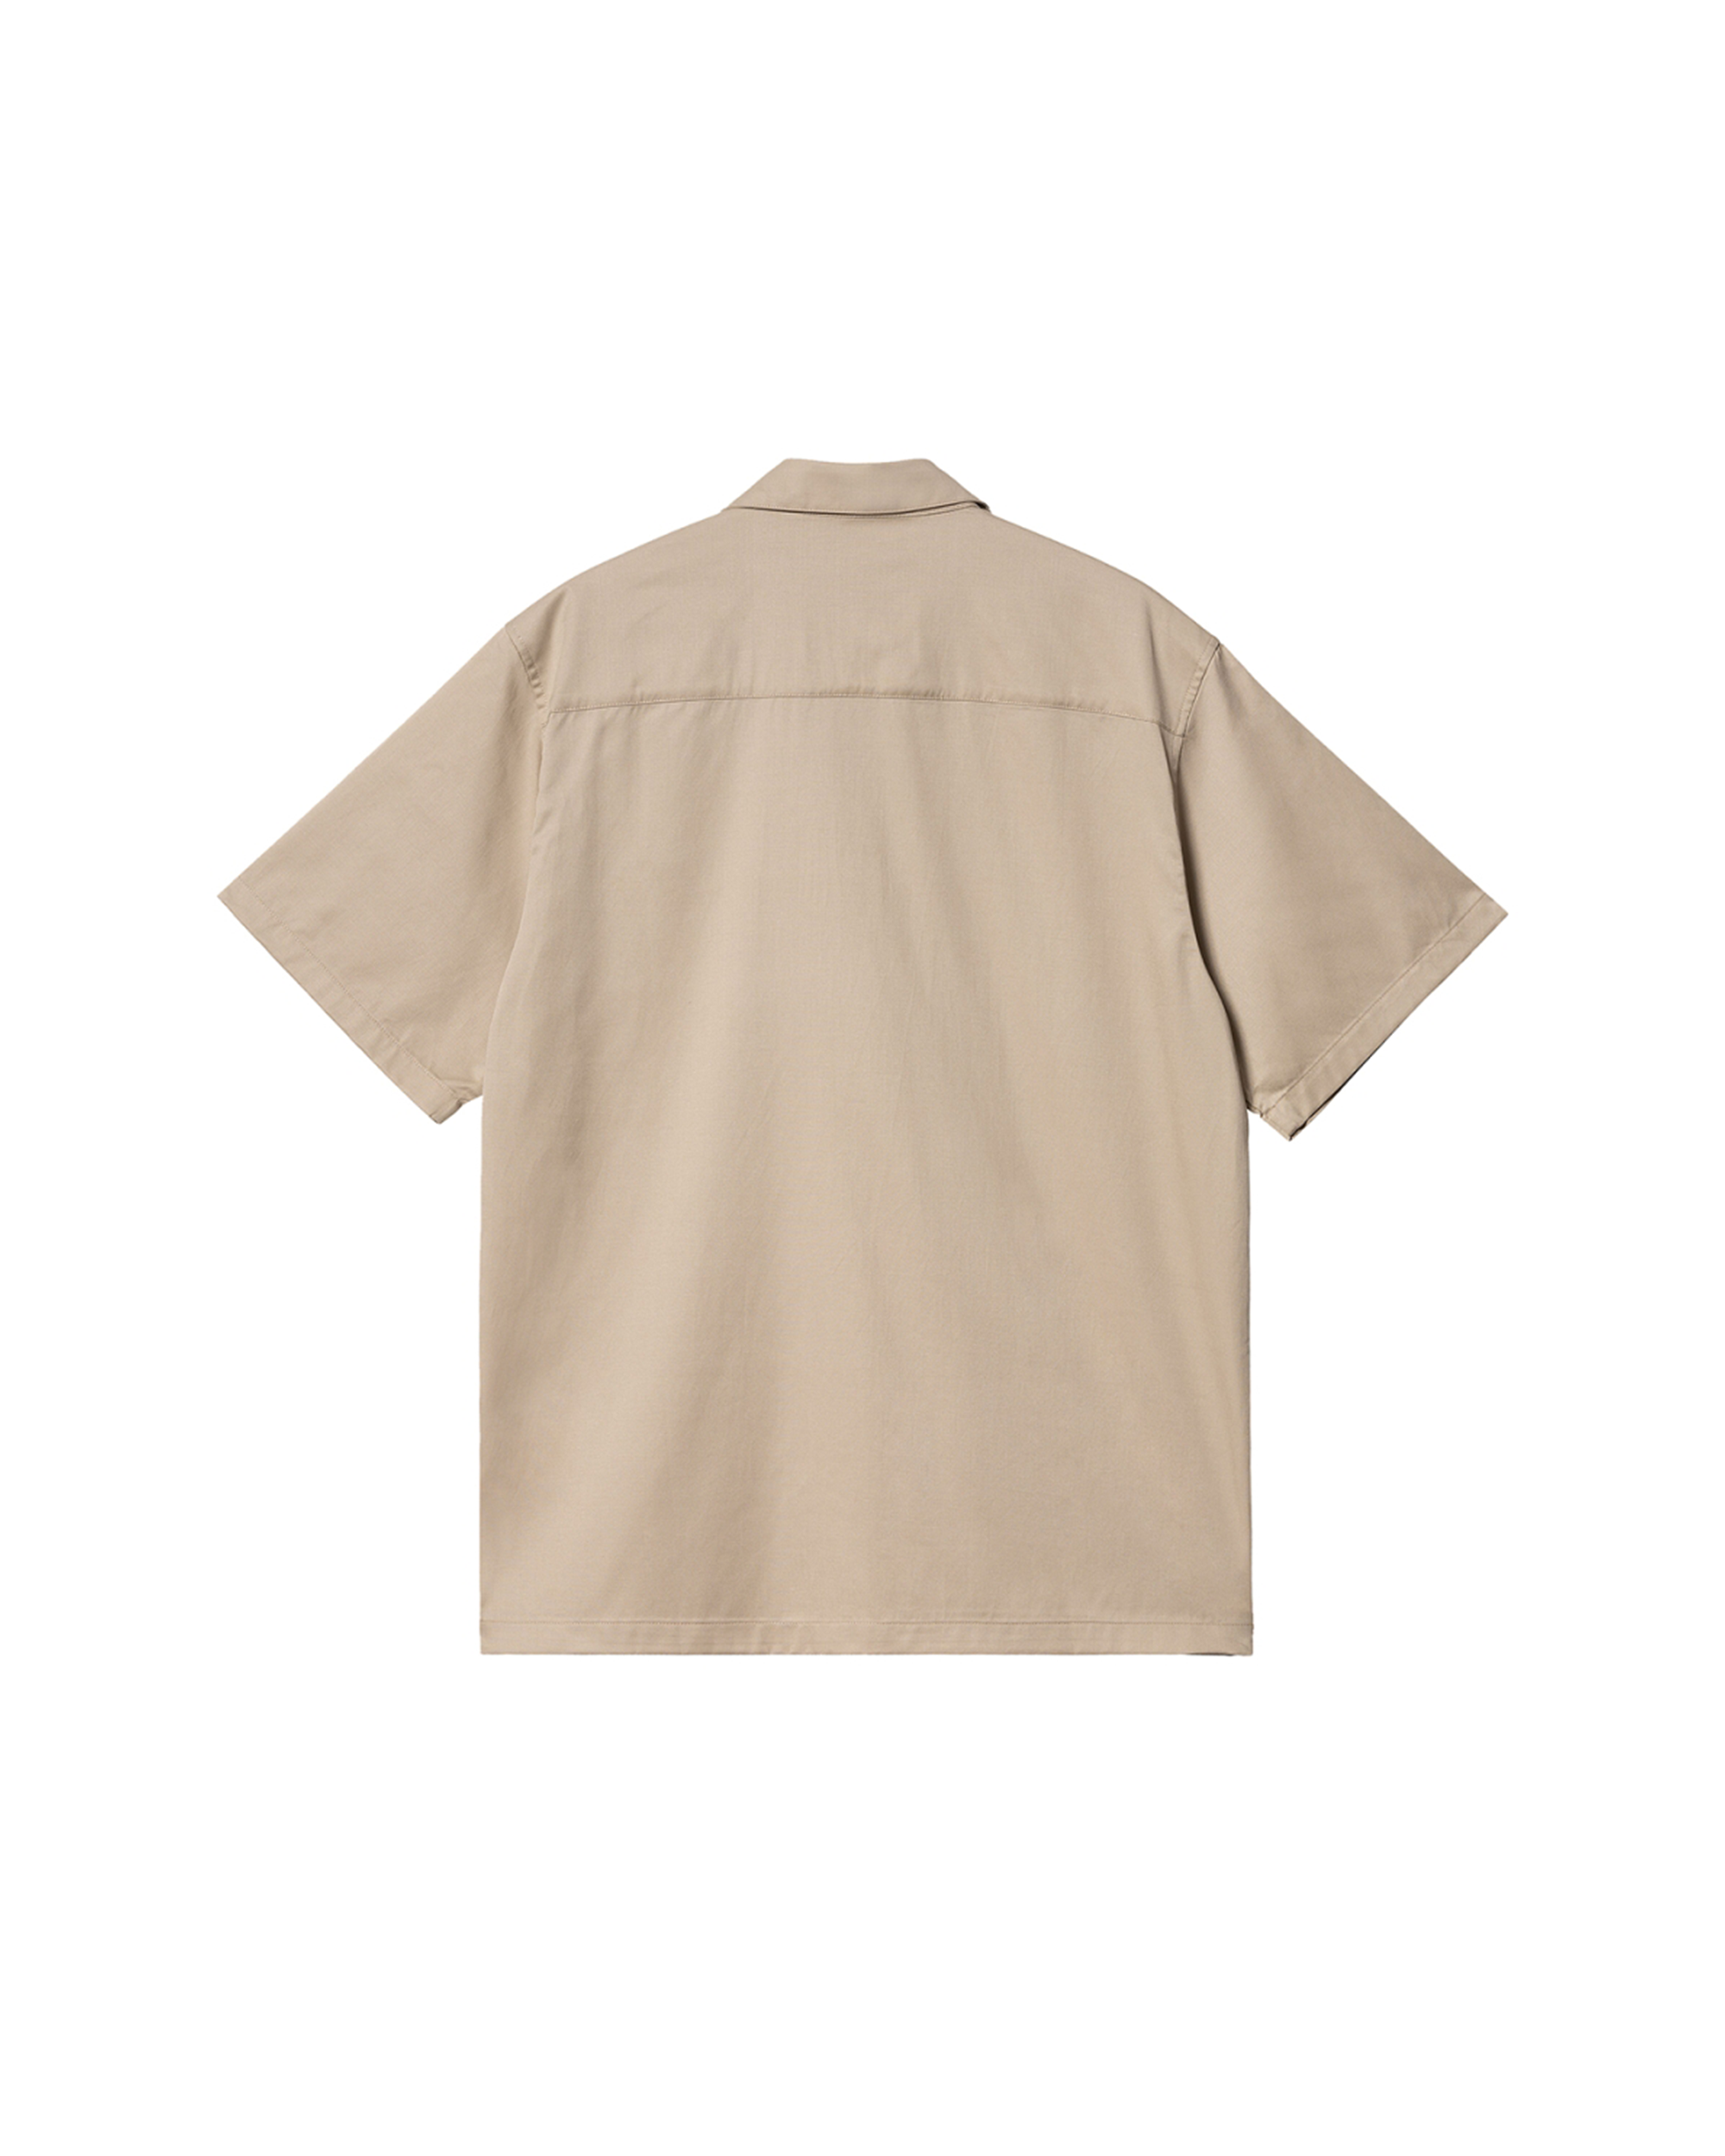 S/S Delray Shirt - Wall / Wax